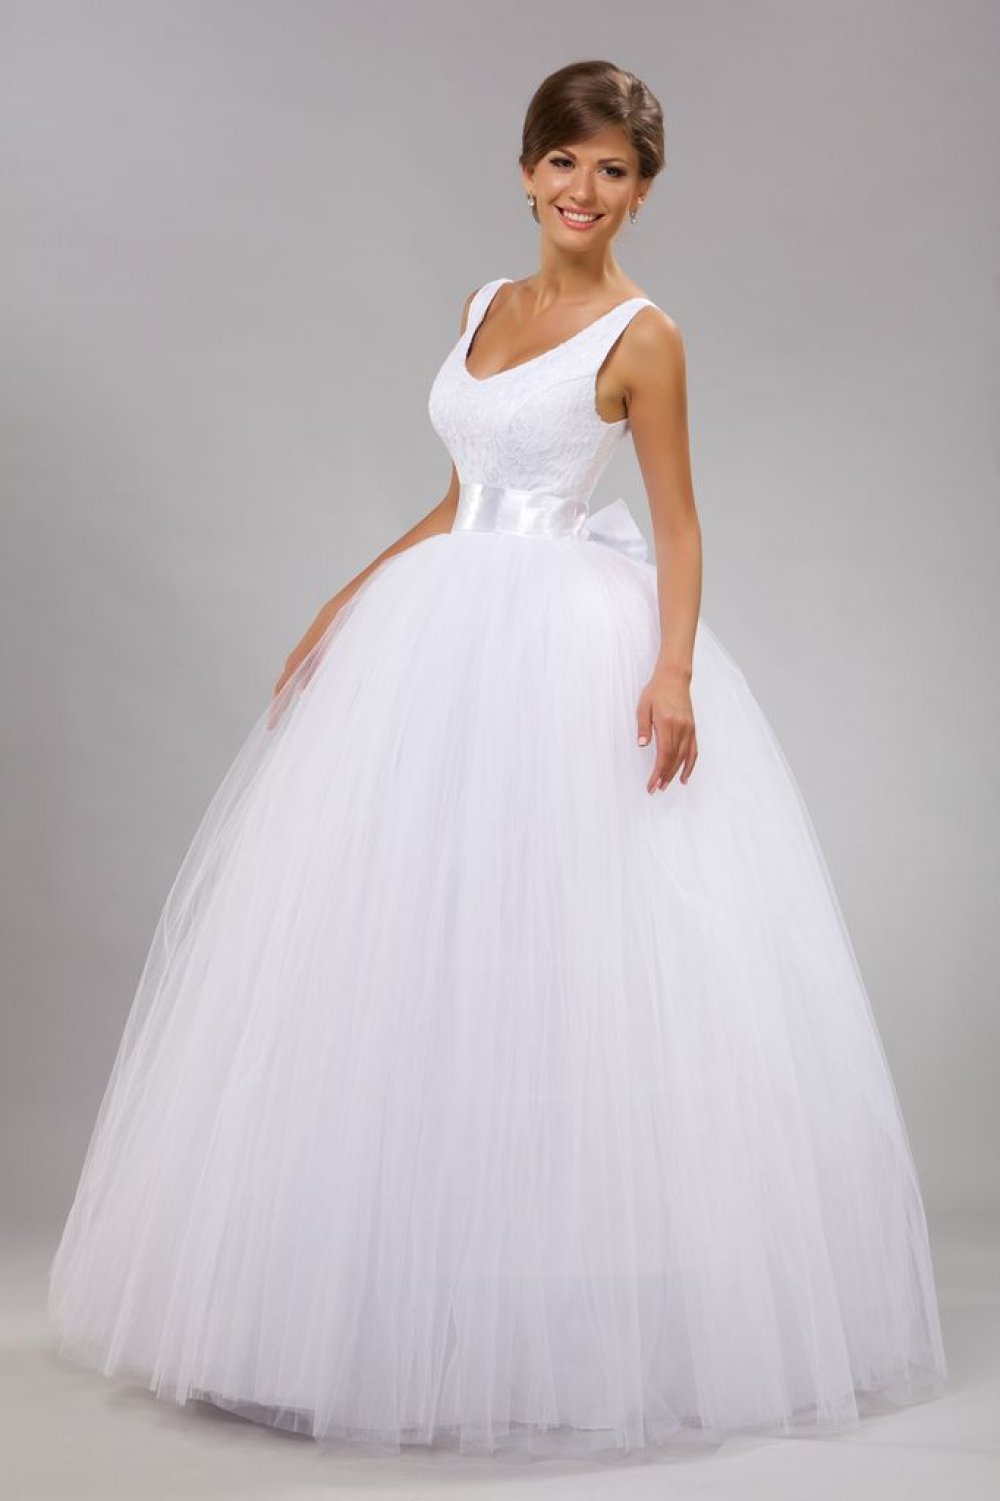 Свадебное платье в стиле Принцесса (белое/айвори)